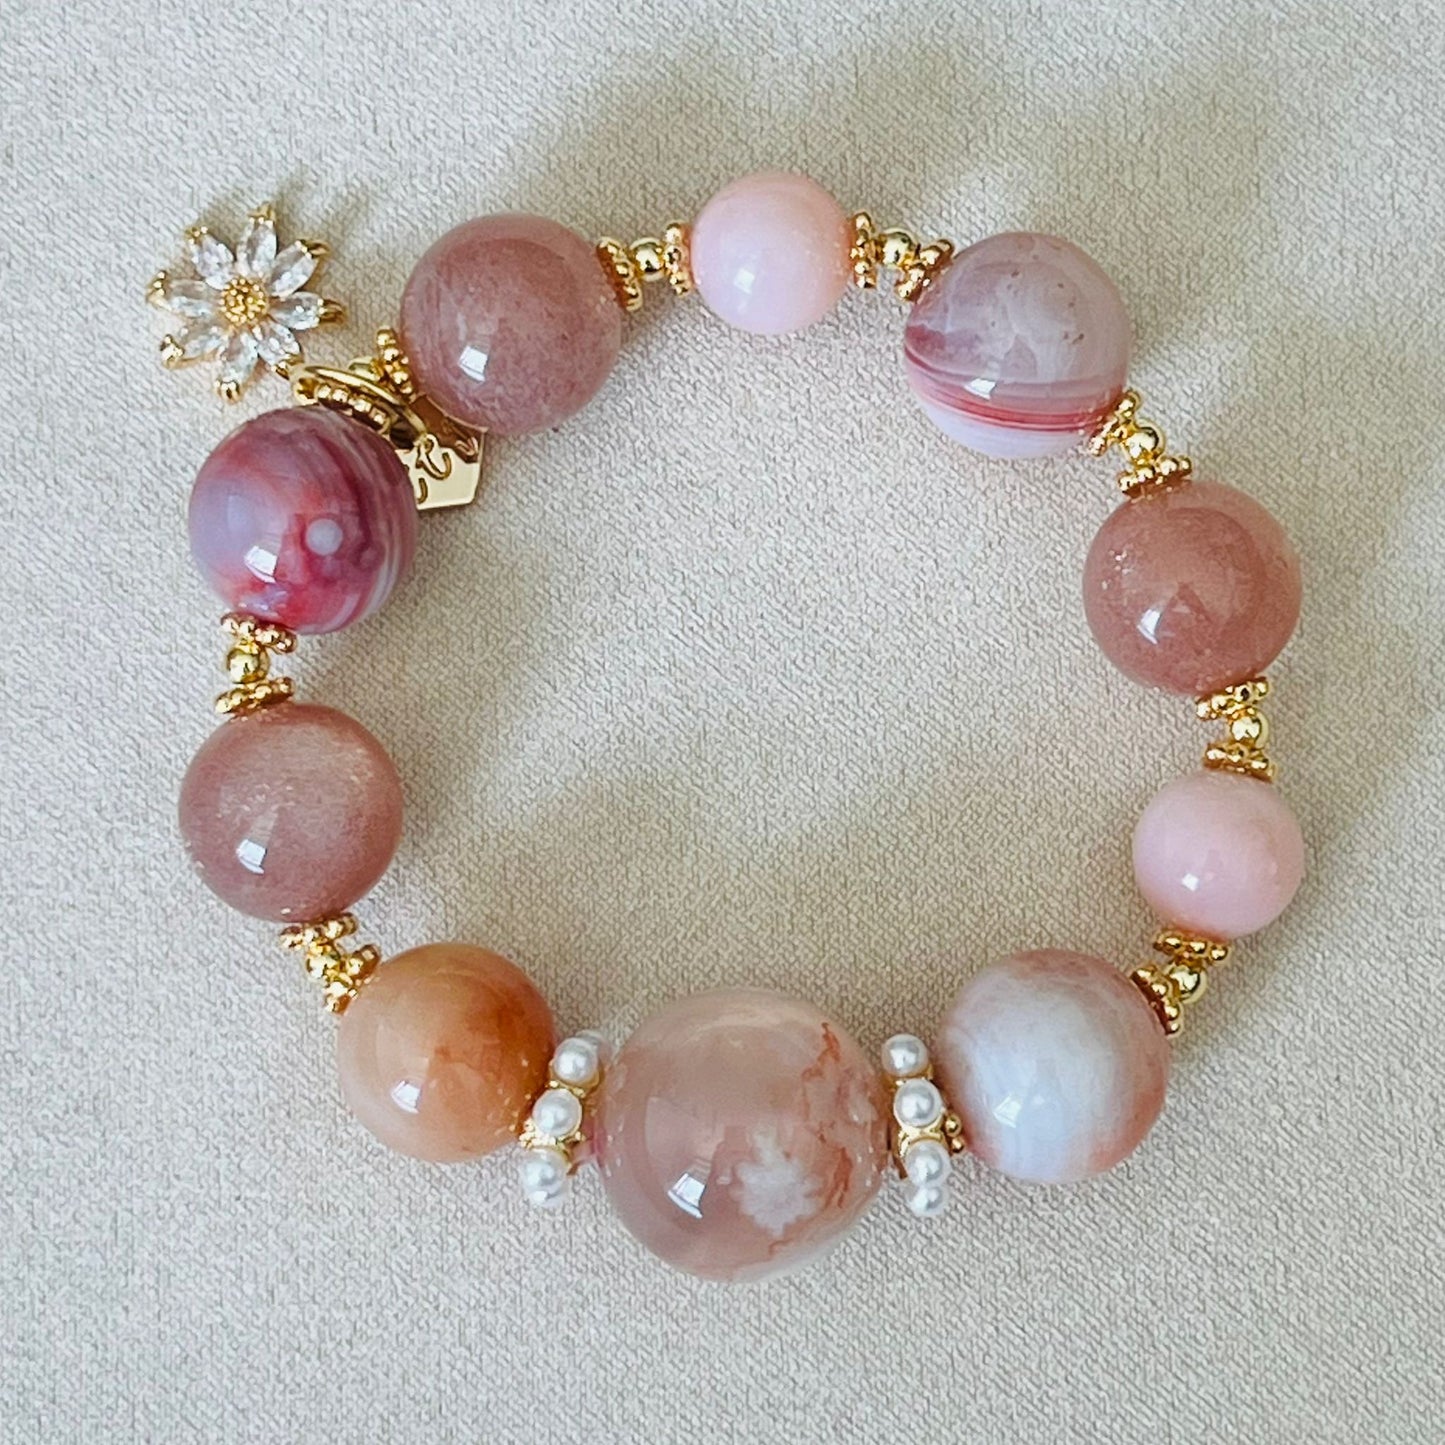 Peach Garden Crown Bracelet